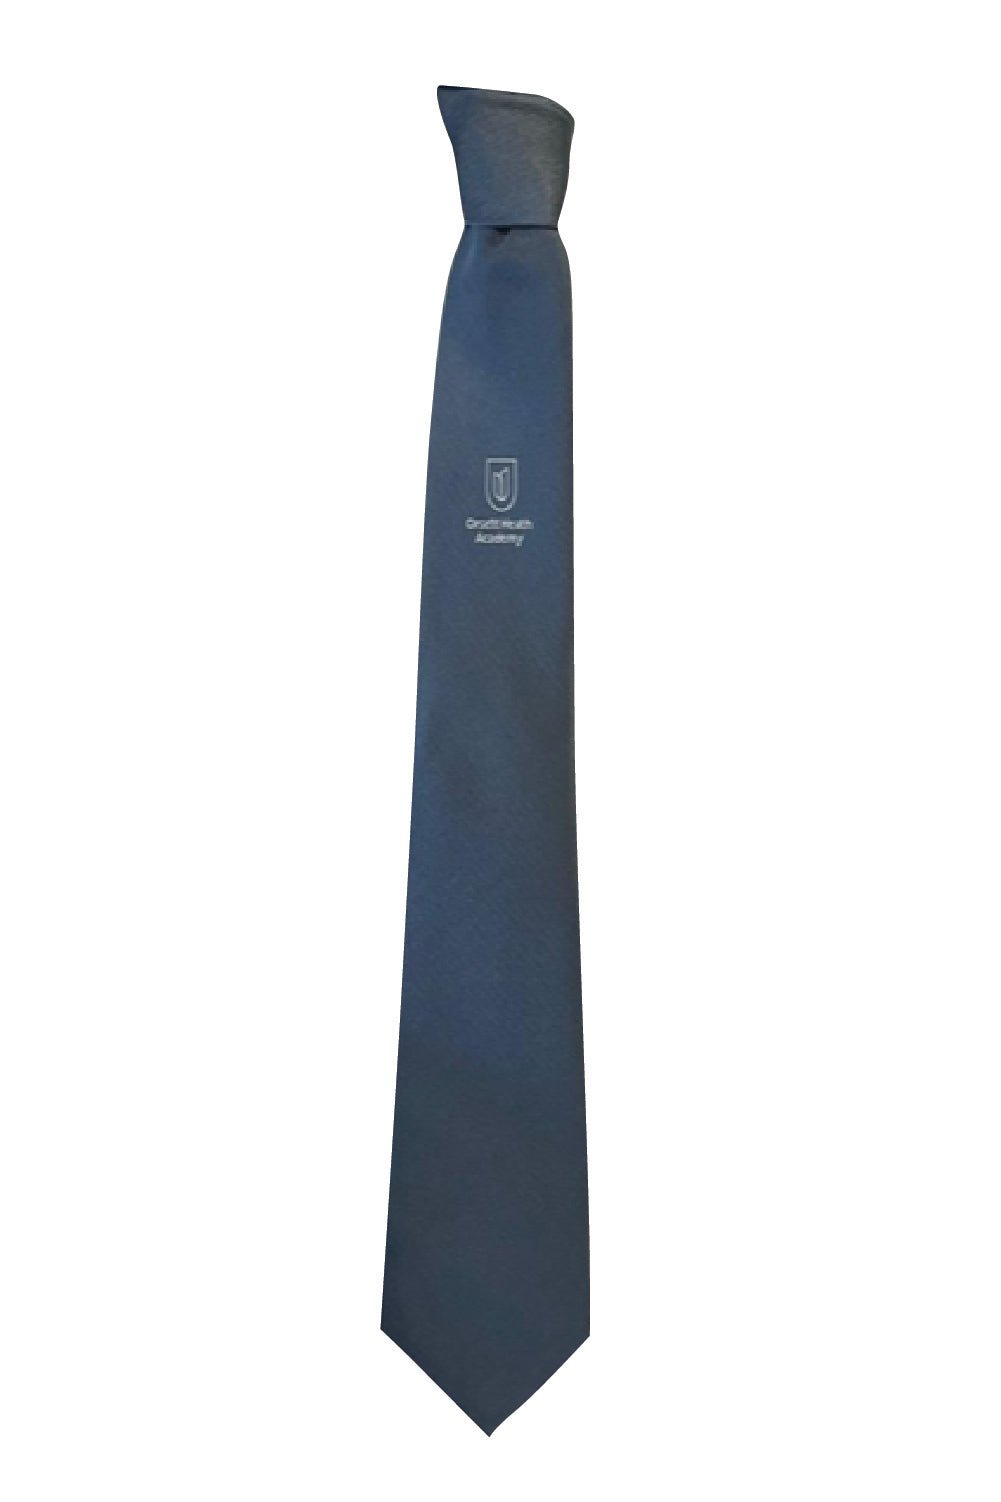 Orsett Heath Tie - Uniformwise Schoolwear